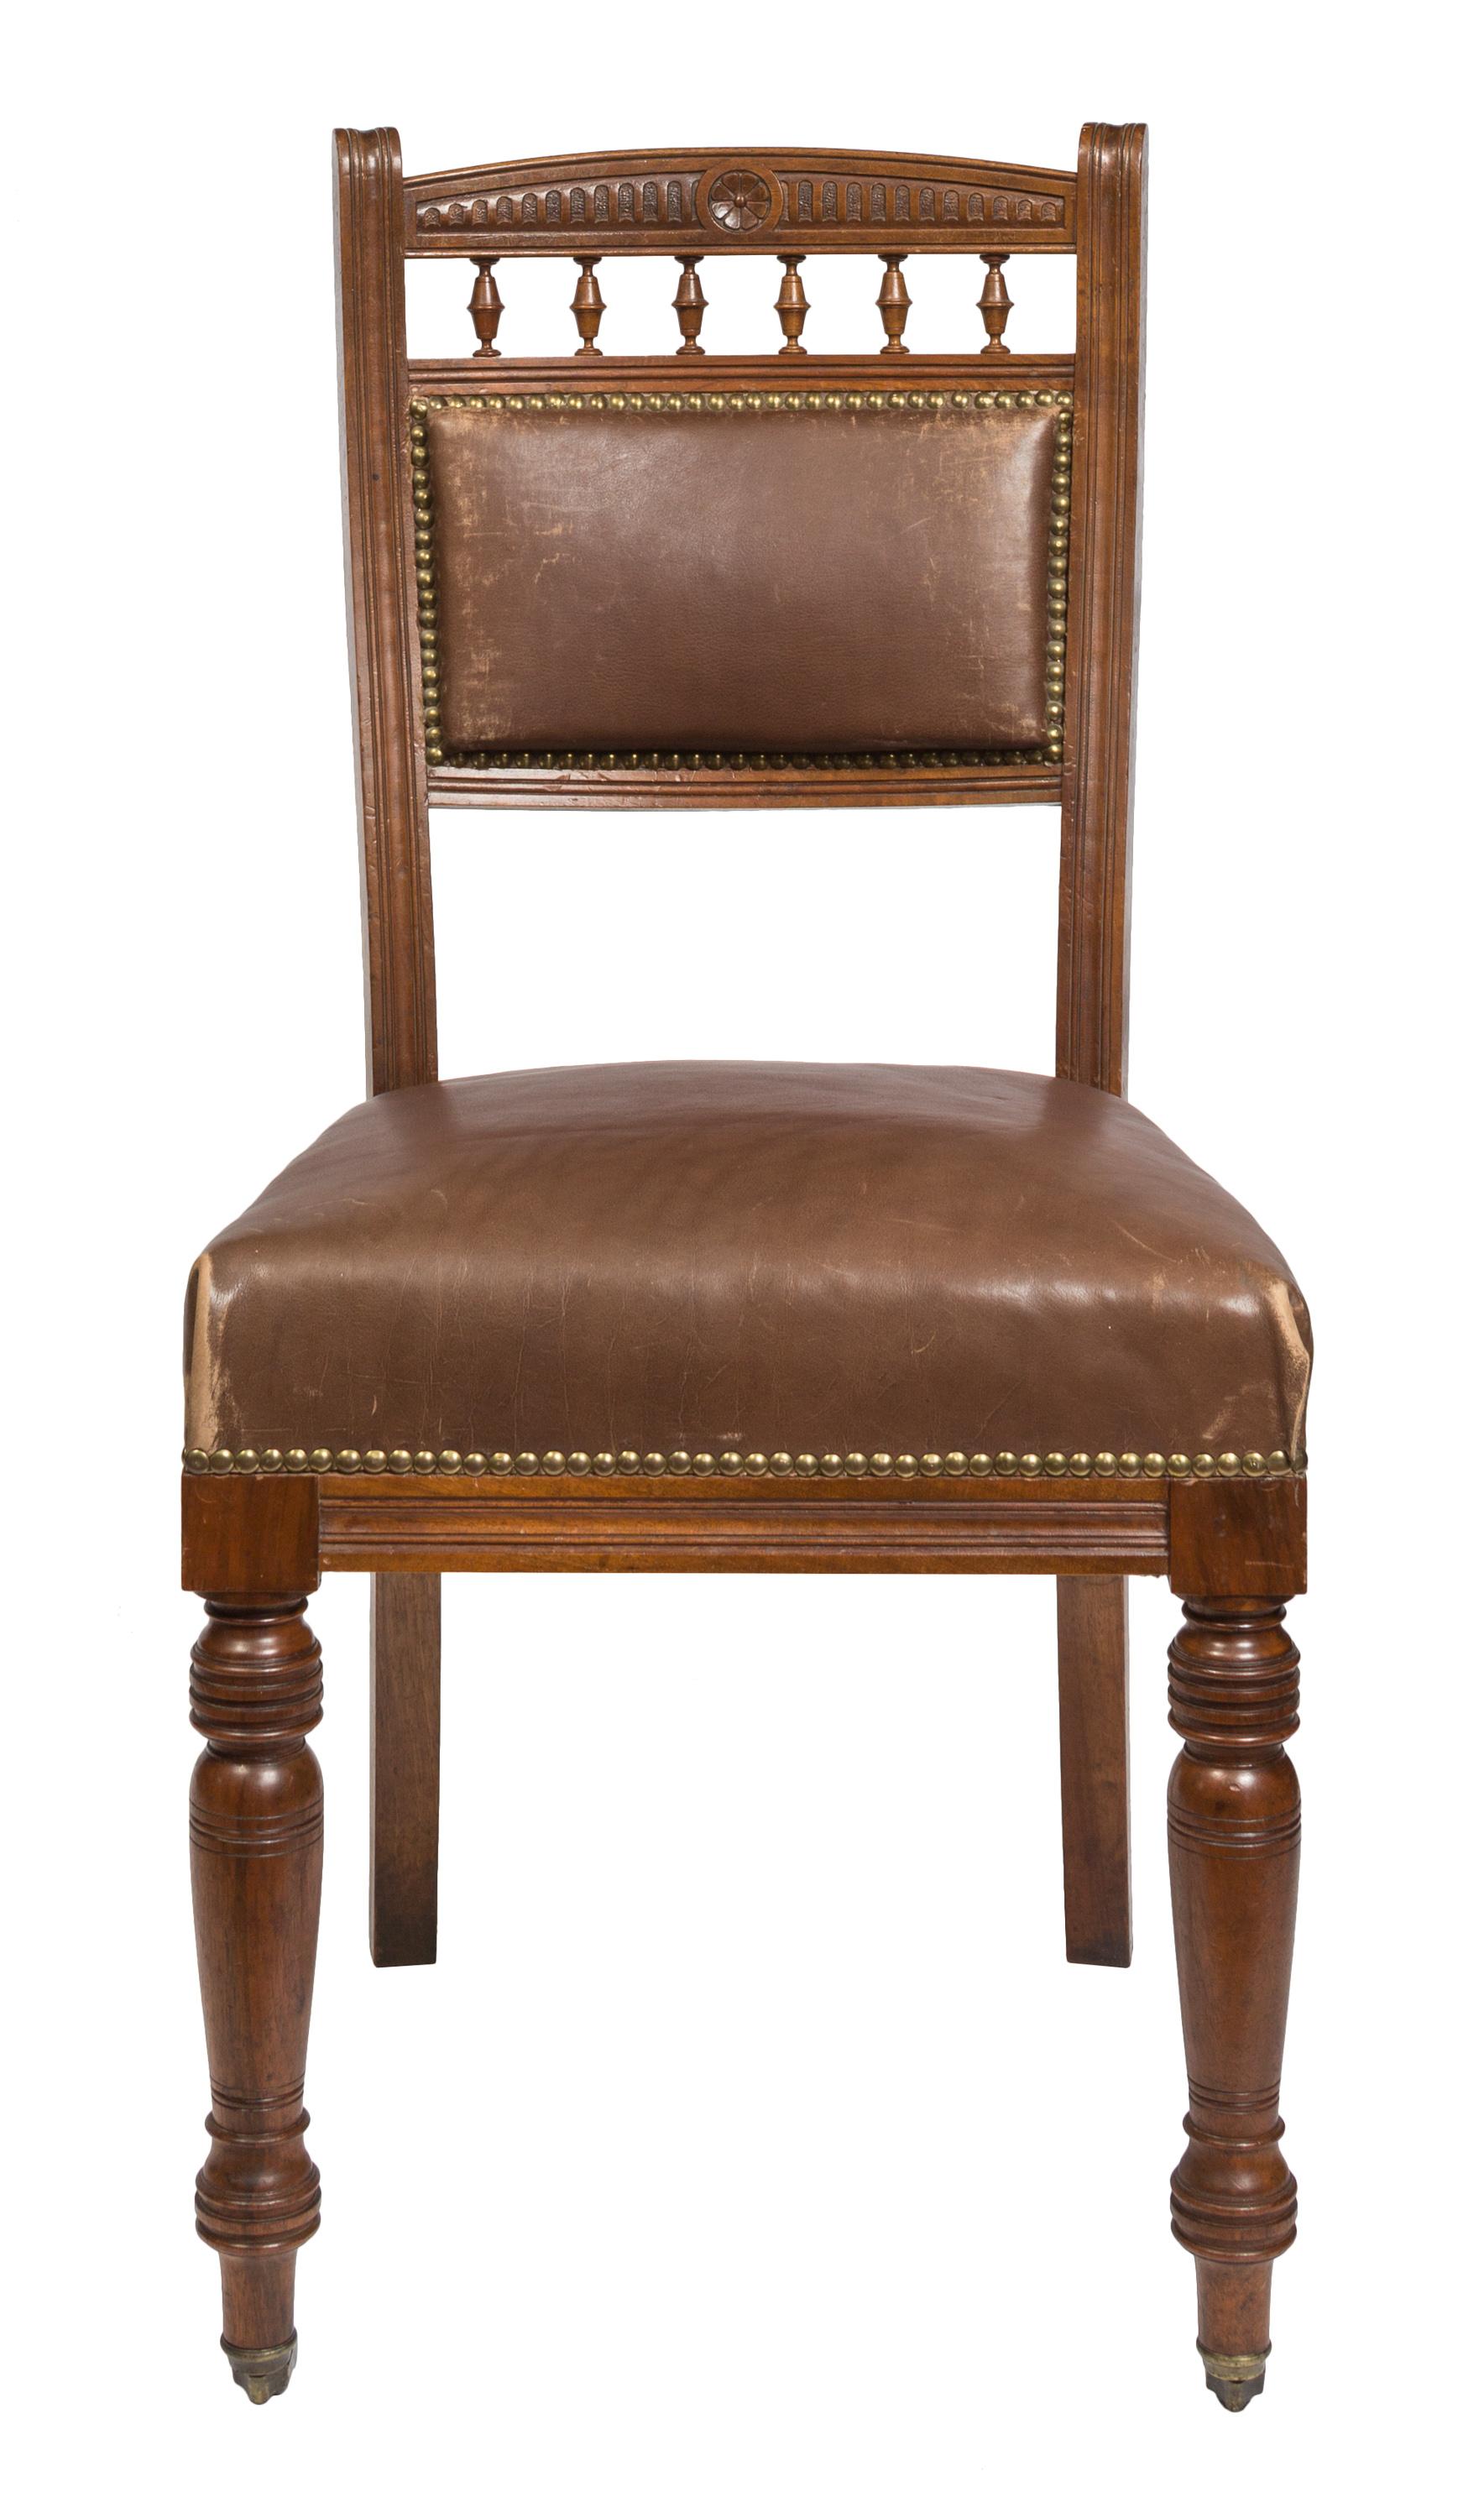 Ein charmantes Paar Stühle im viktorianischen Stil, gepolstert mit schokoladenbraunem Leder, mit dekorativem Nagelkopfbesatz und schön geschnitzten Details in der Stuhllehne. Die Vorderbeine sind mit Rollen versehen, um die Bewegung zu erleichtern,